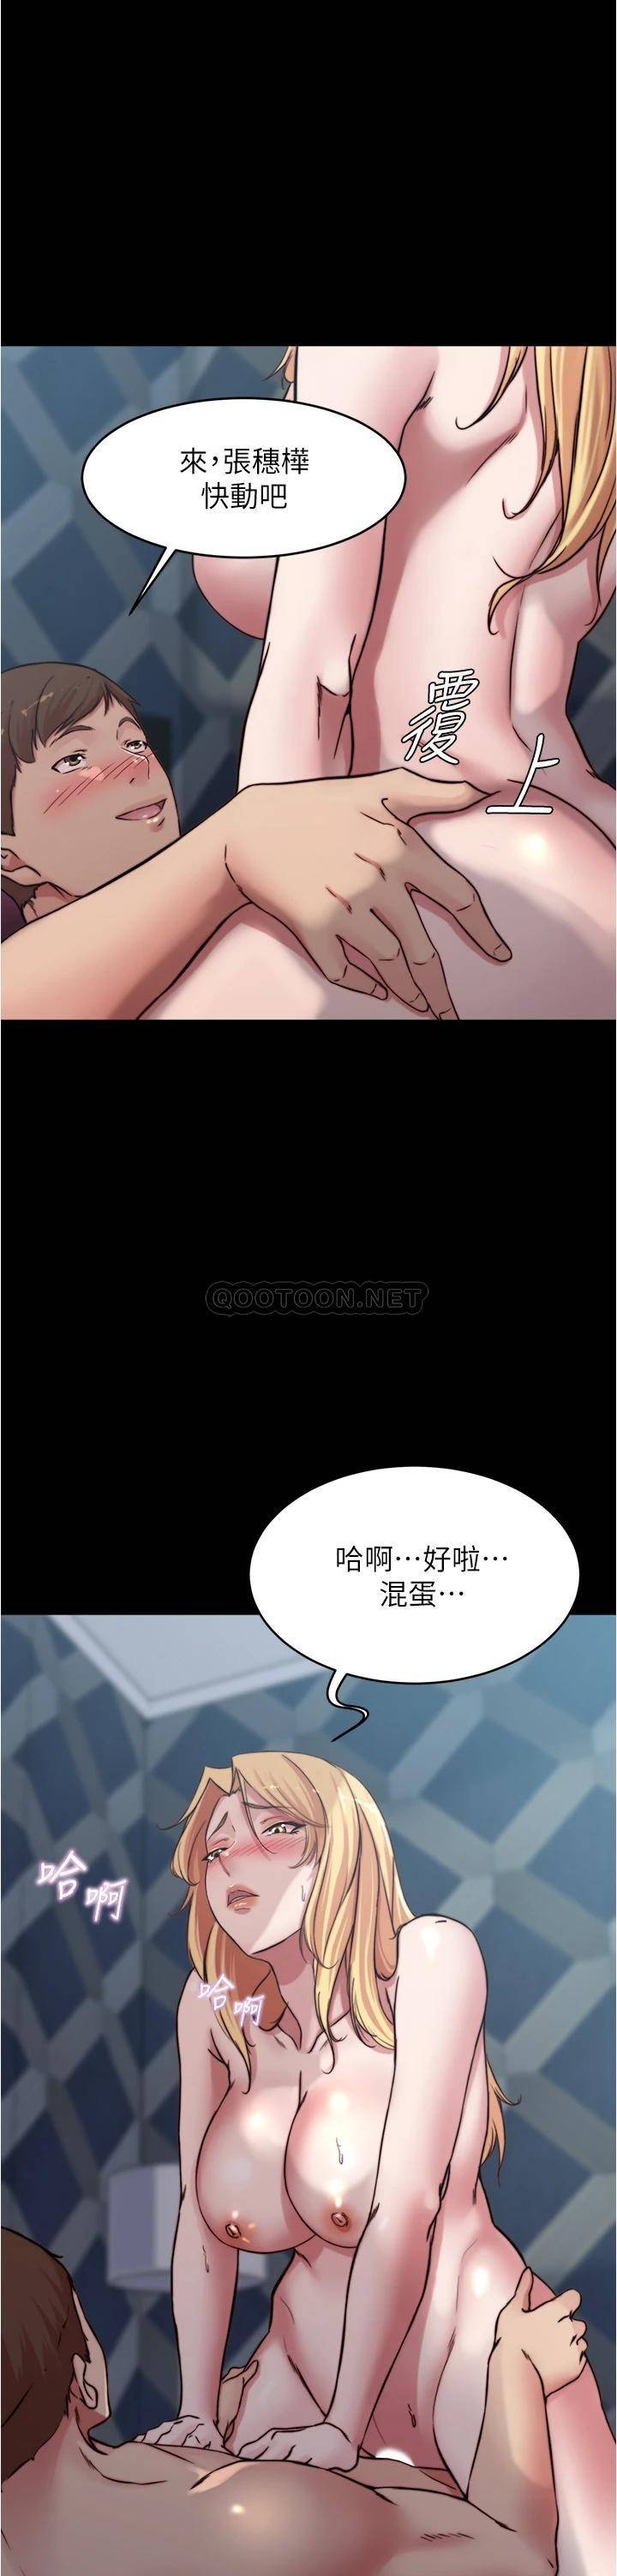 韩国污漫画 小褲褲筆記 第84话 性感冷艳的人妻登场 2